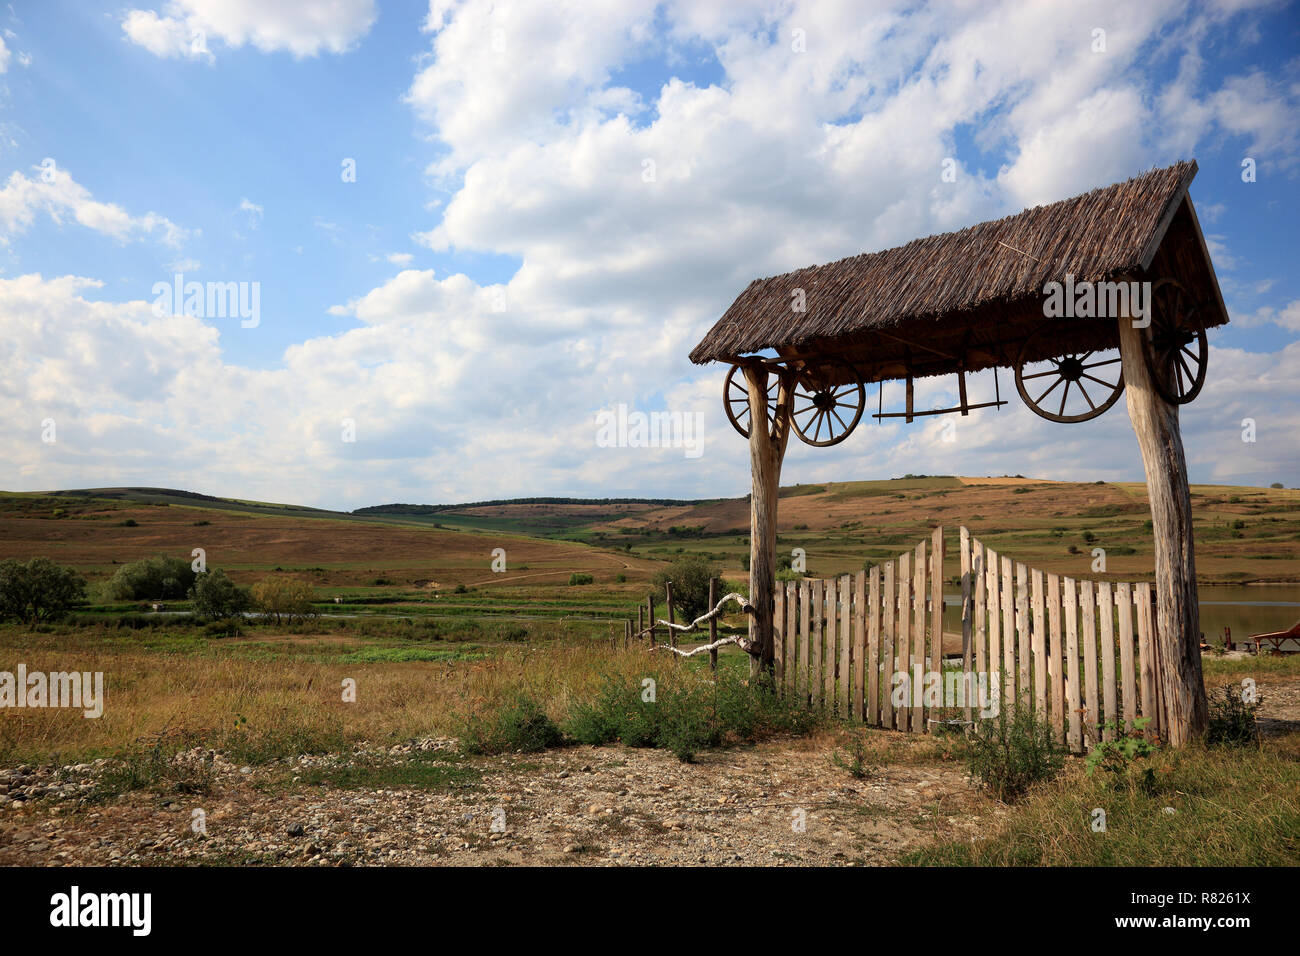 Siebenbürger holztor am Eingang zu einem landwirtschaftlichen Betrieb, bei Boz, Siebenbürgen, Rumänien Stockfoto